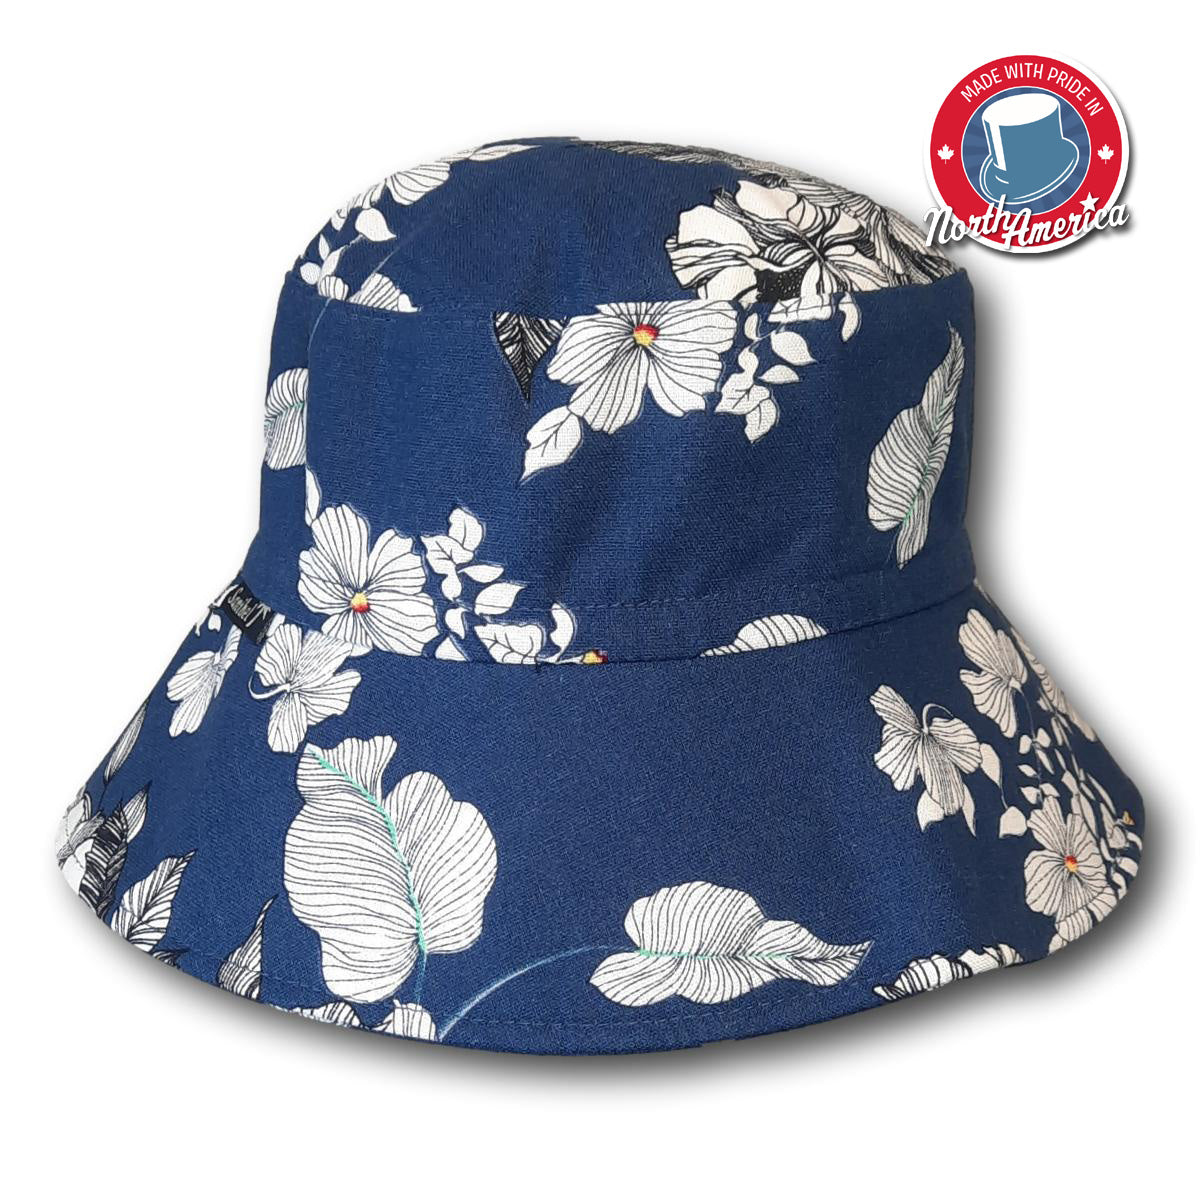 Hibiscus Printed Wide Brim Bucket Hat